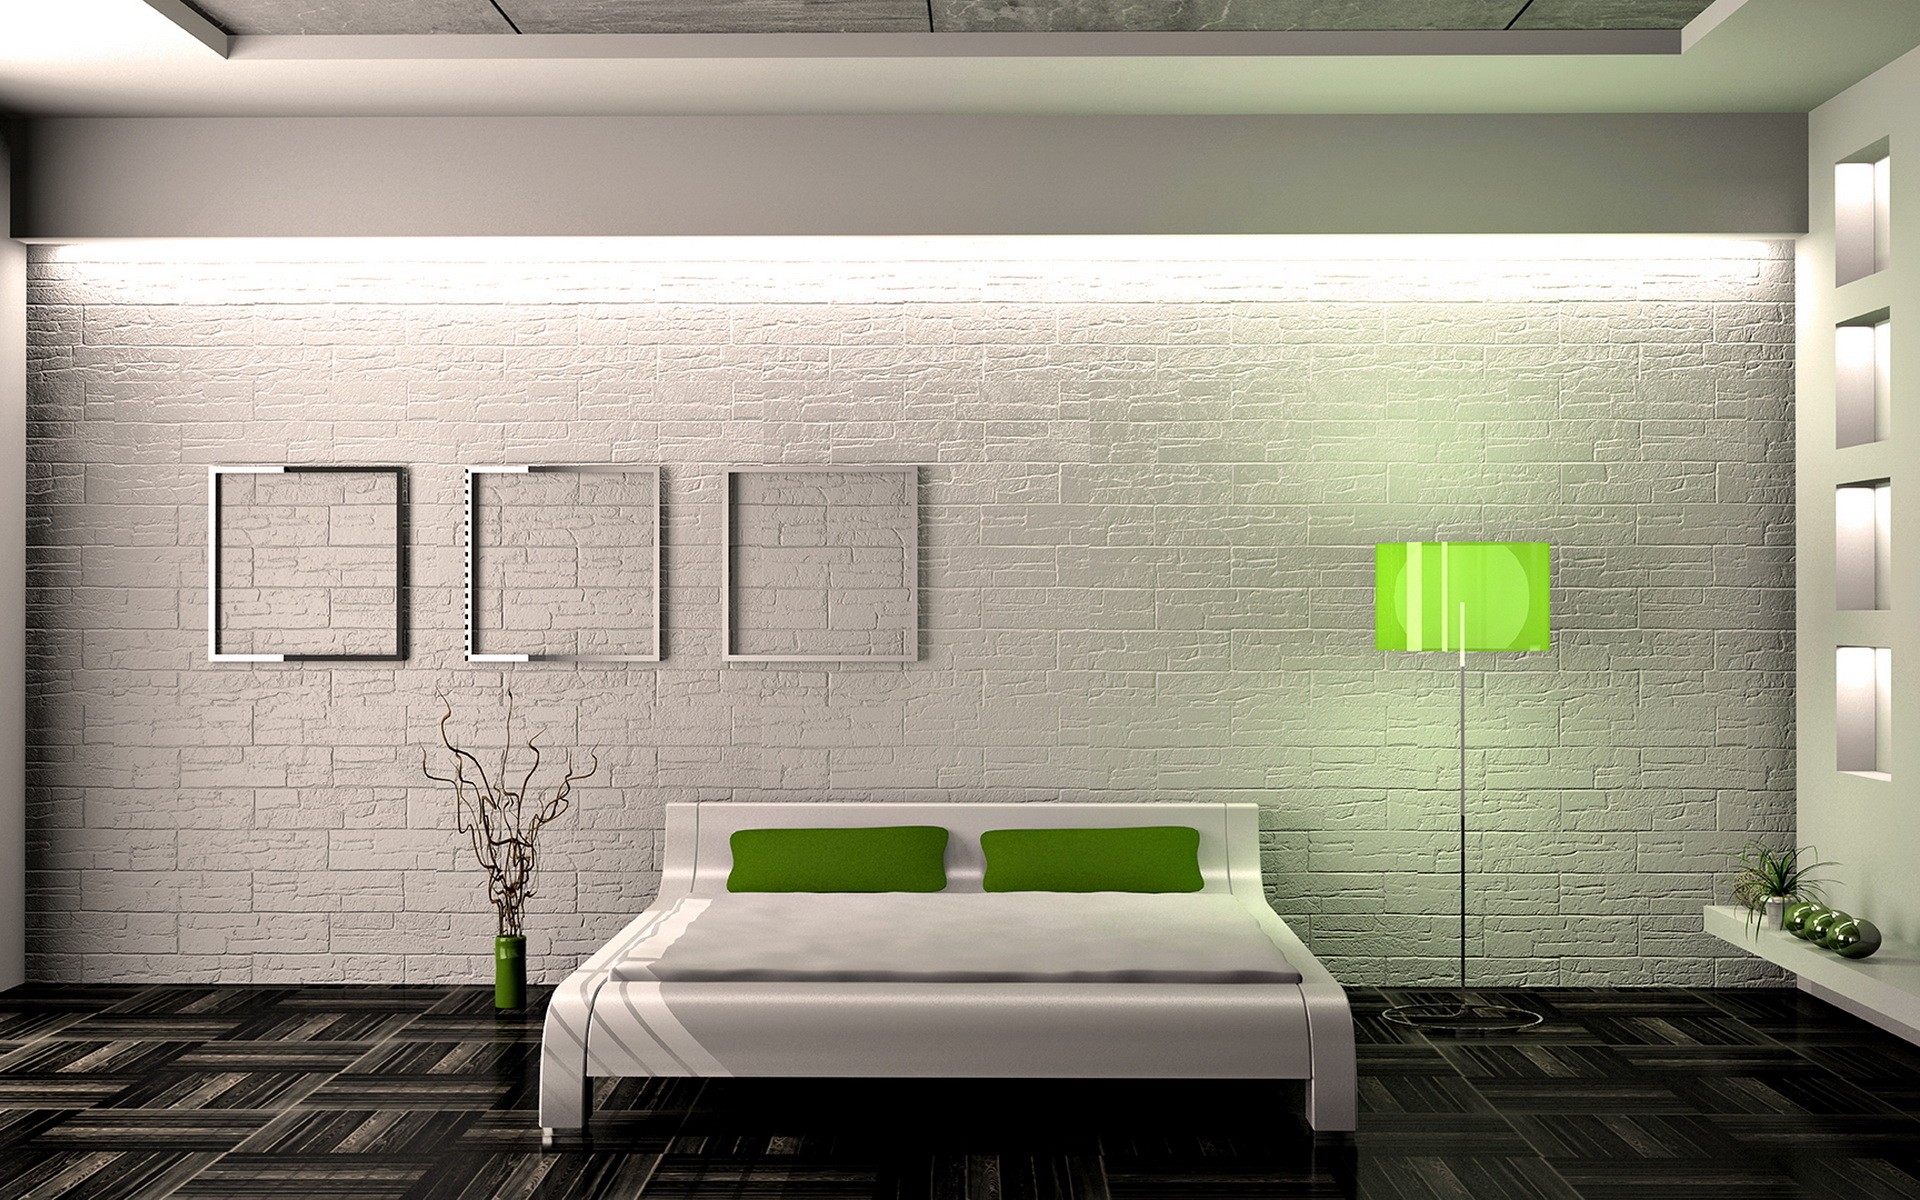 Роскошное оформление интерьера помещения в стиле минимализм